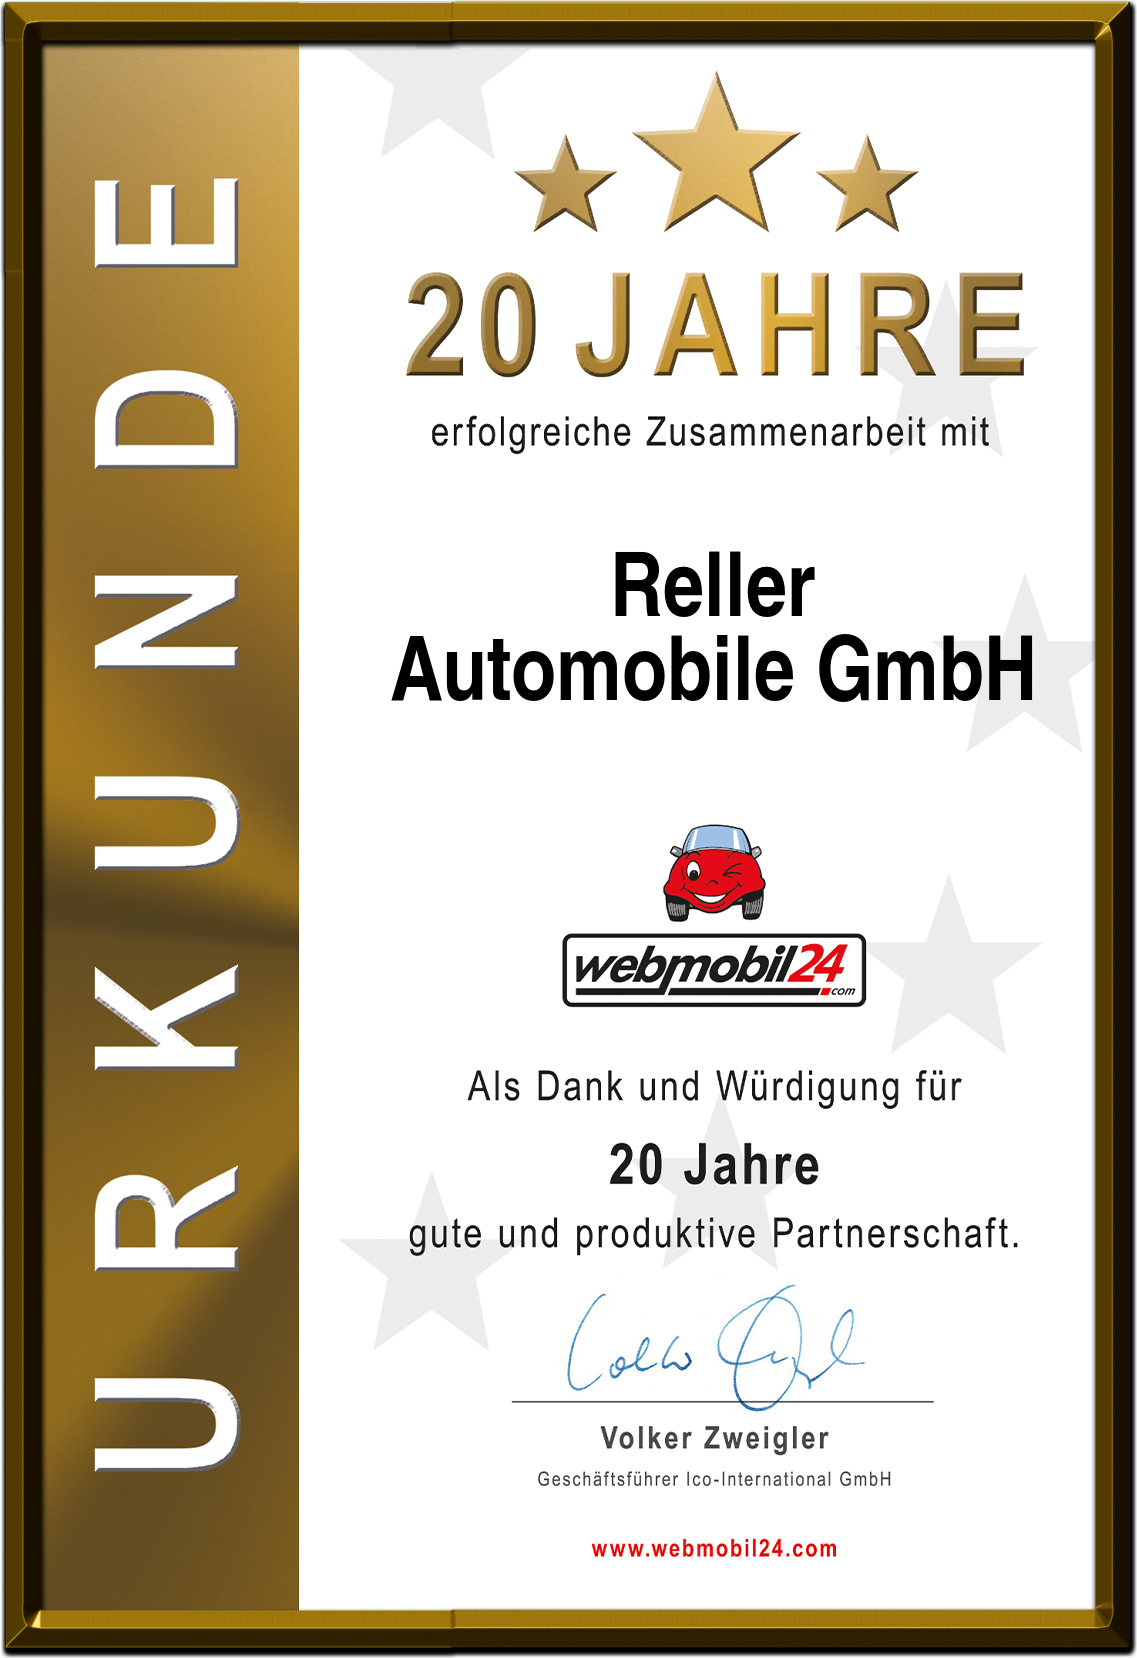 RellerAutomobile GmbH